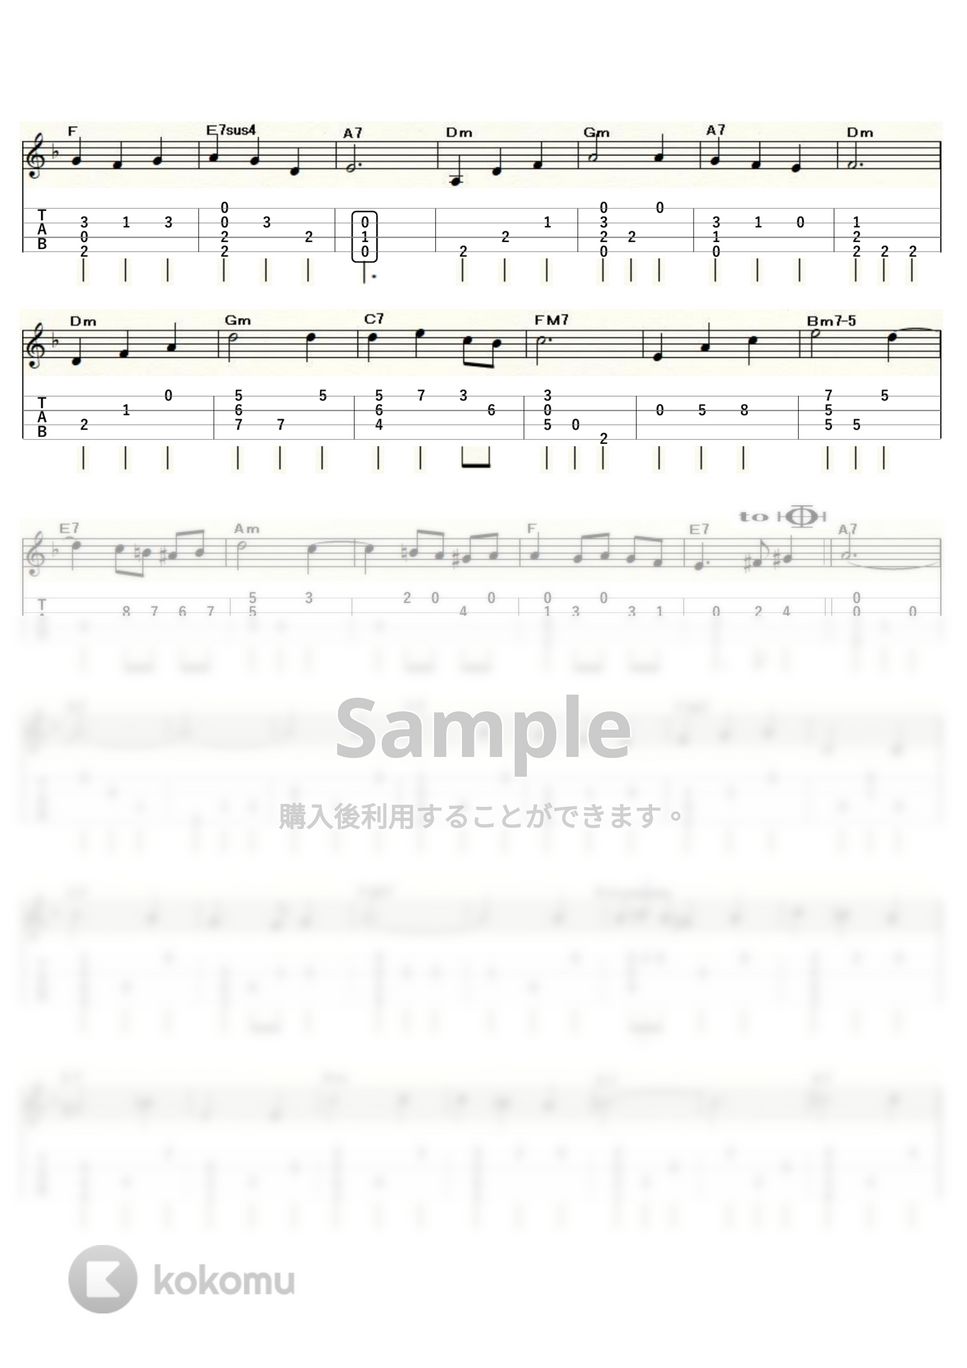 久石譲 - 人生のメリーゴーランド (ｳｸﾚﾚｿﾛ / Low-G / 中級～上級) by ukulelepapa